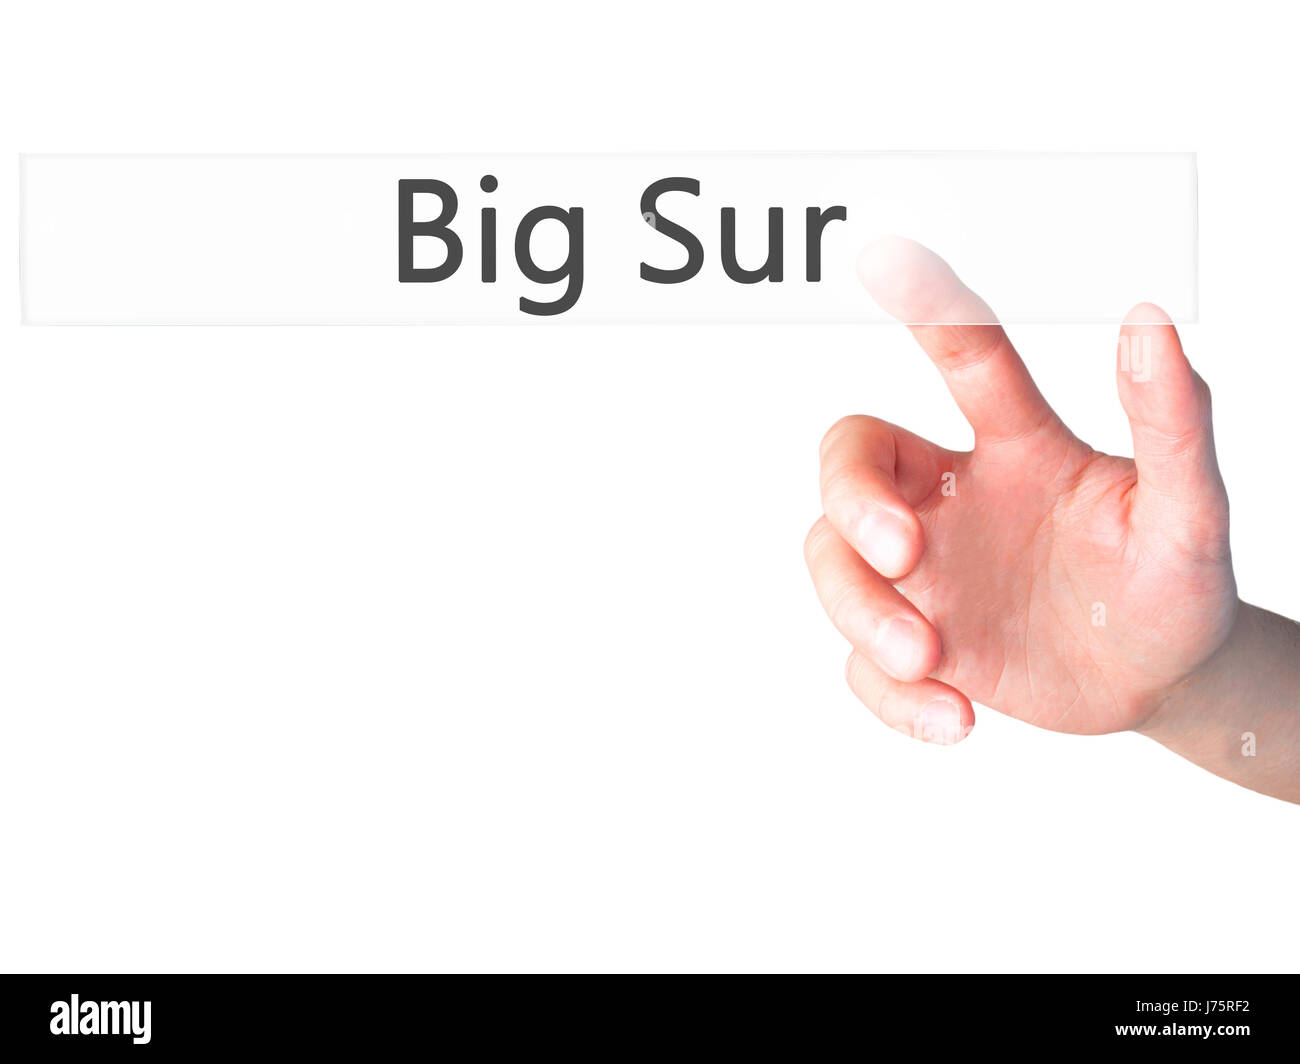 Big Sur - Hand drücken einer Taste auf unscharfen Hintergrund Konzept. Wirtschaft, Technologie, Internet-Konzept. Stock Foto Stockfoto